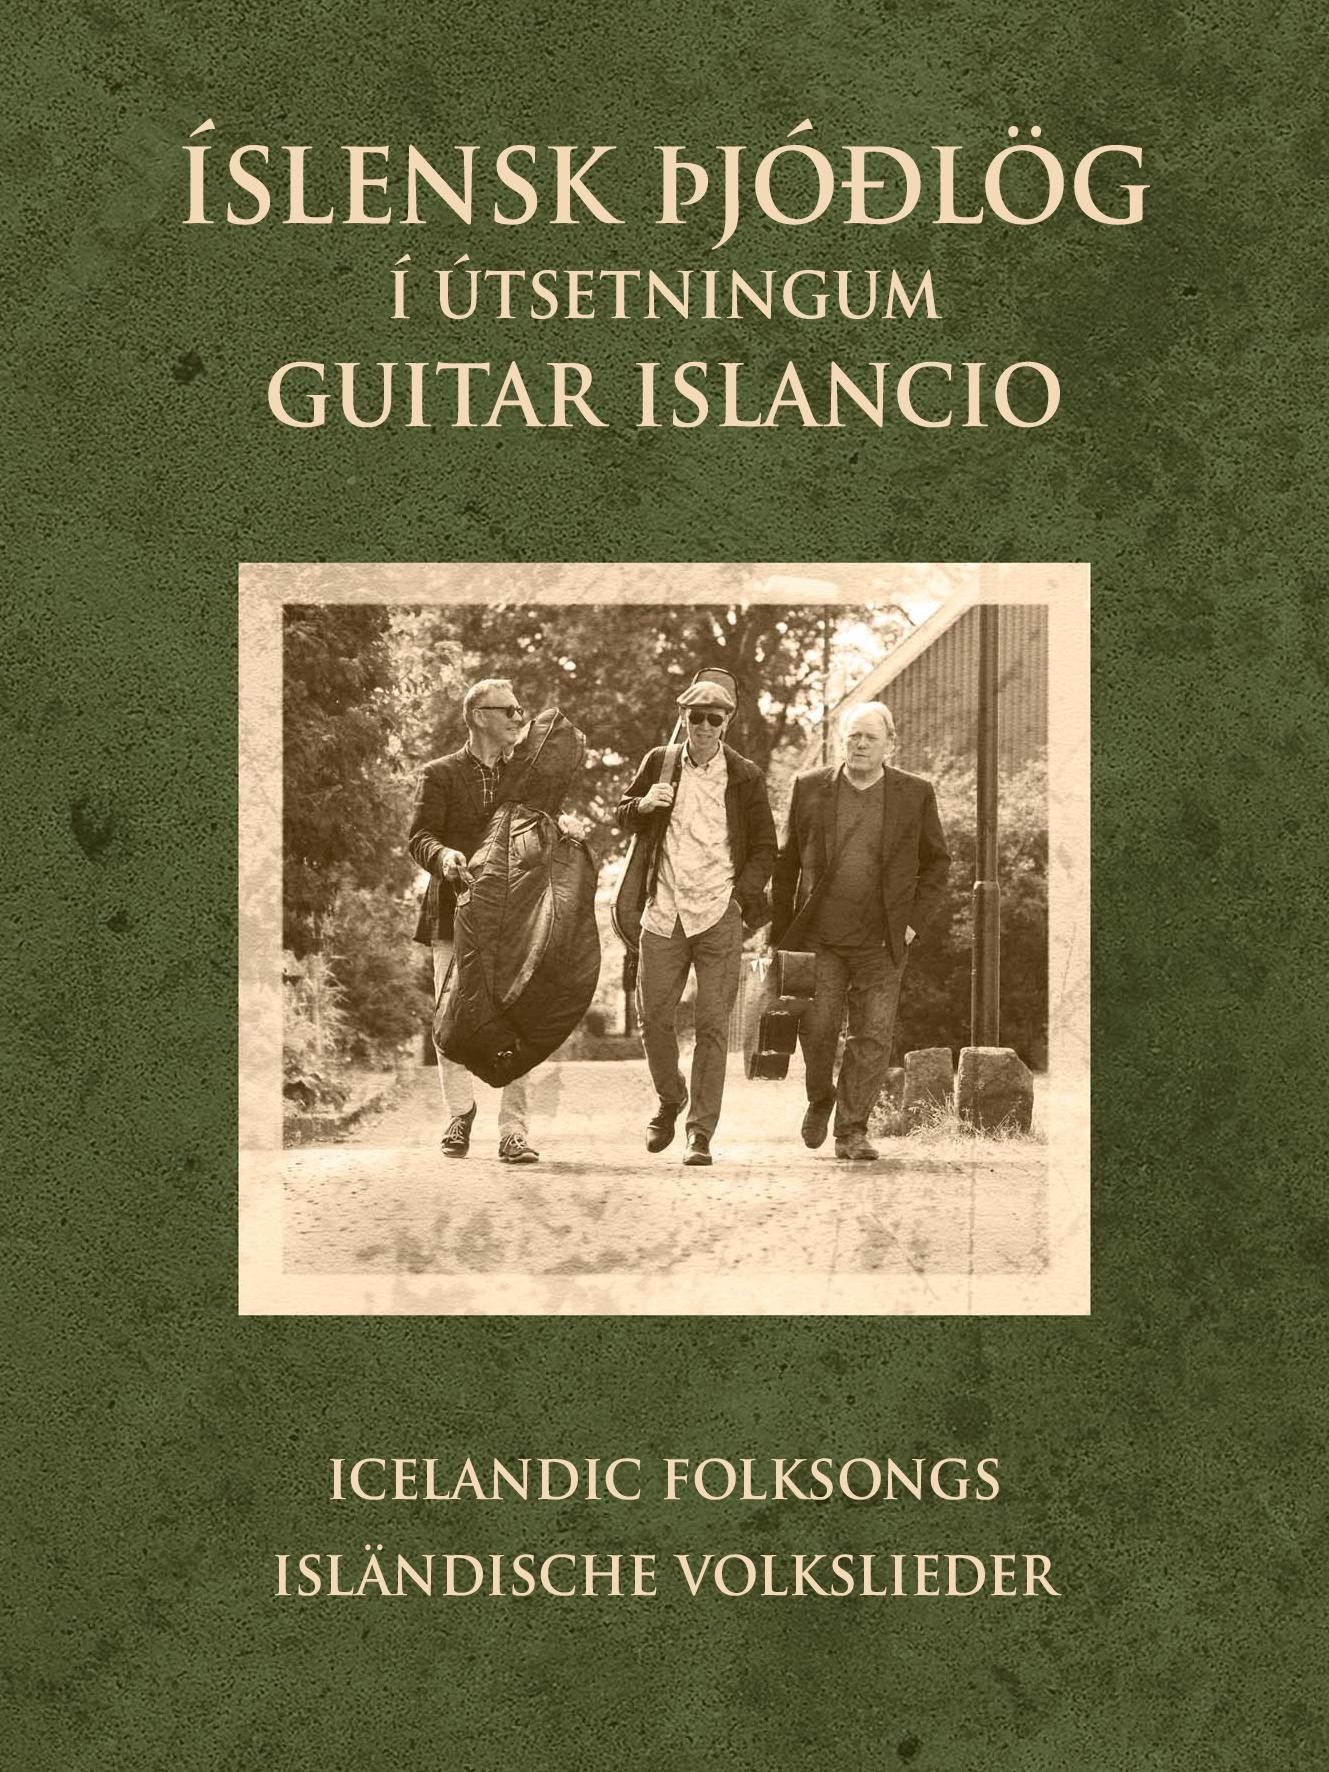 Isländische Volkslieder, interpretiert von Guitar Islancio - Notenbuch